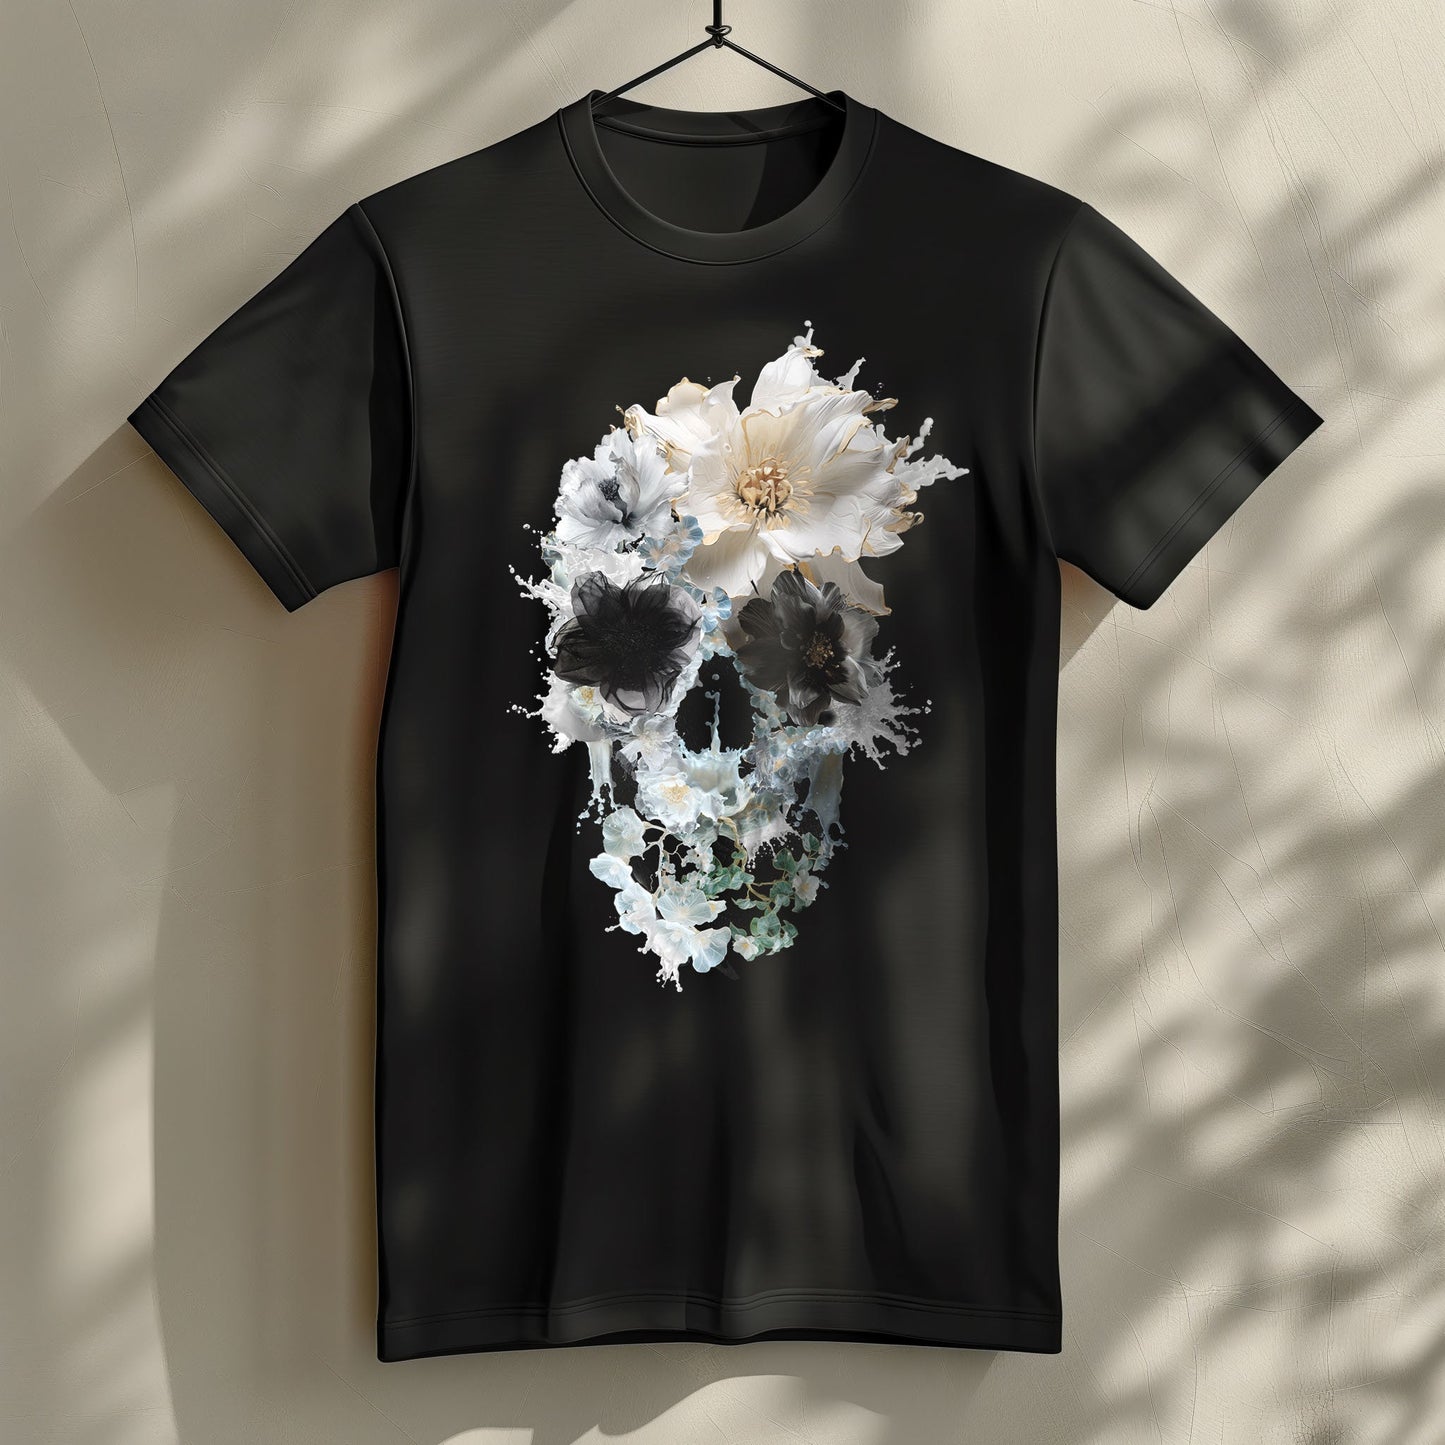 Bloom Skull Men's T shirt, Skull Printed Shirt Gift For Him, Bella Canvas Skull Art Graphic Tee Gift